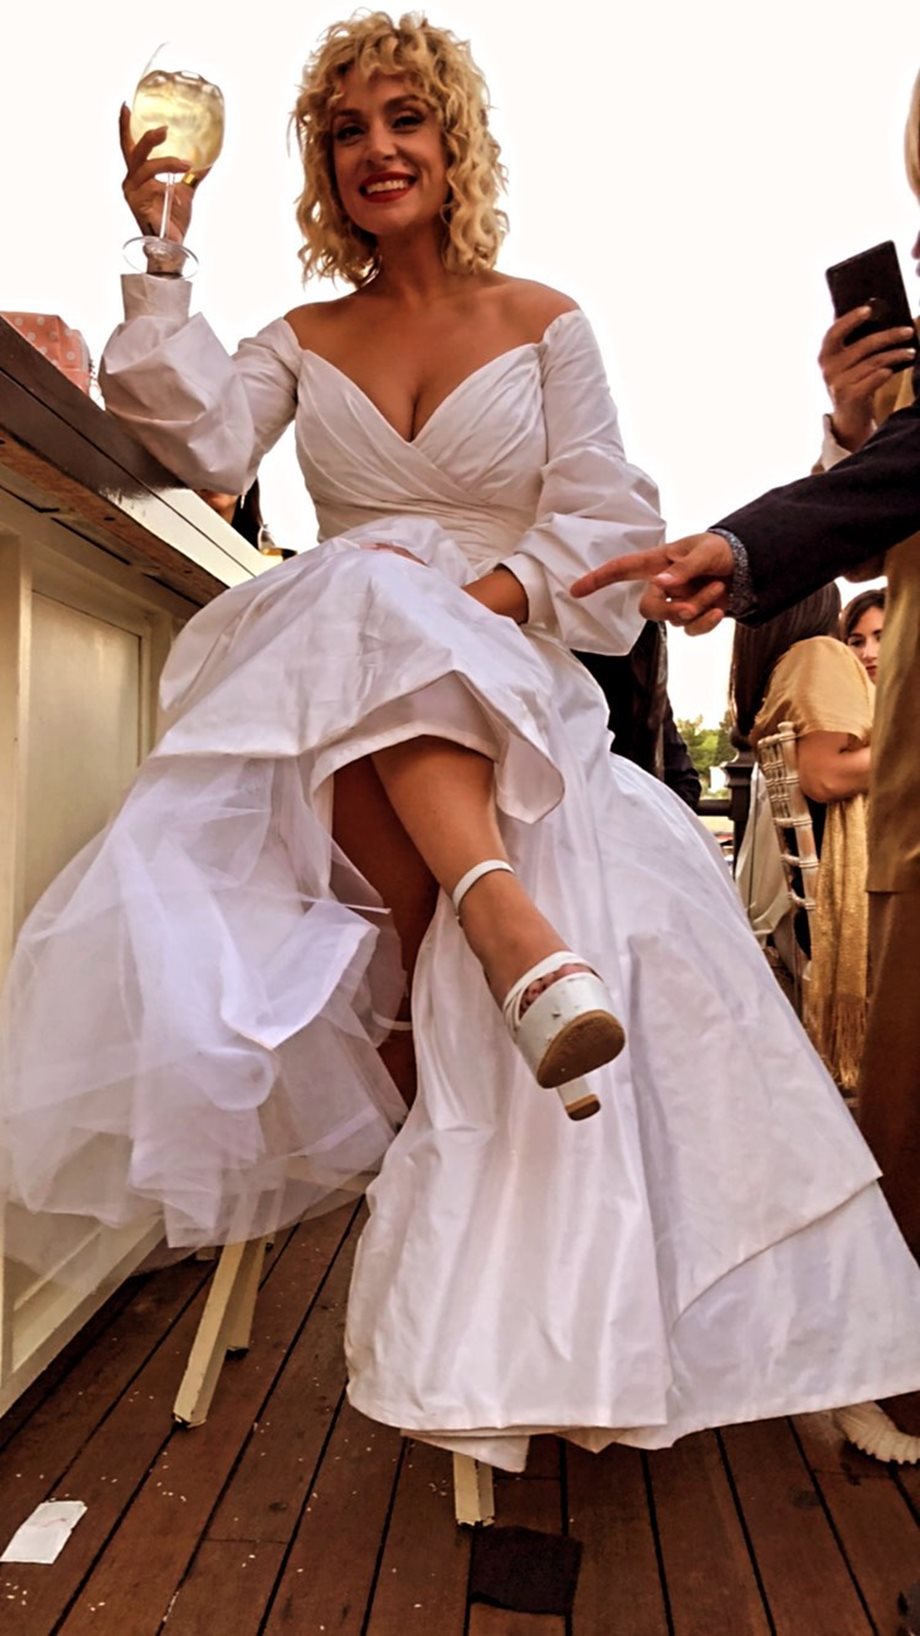 Ελεωνόρα Ζουγανέλη - Σπύρος Δημητρίου: Δείτε φωτογραφίες από το pre wedding party του ζευγαριού 